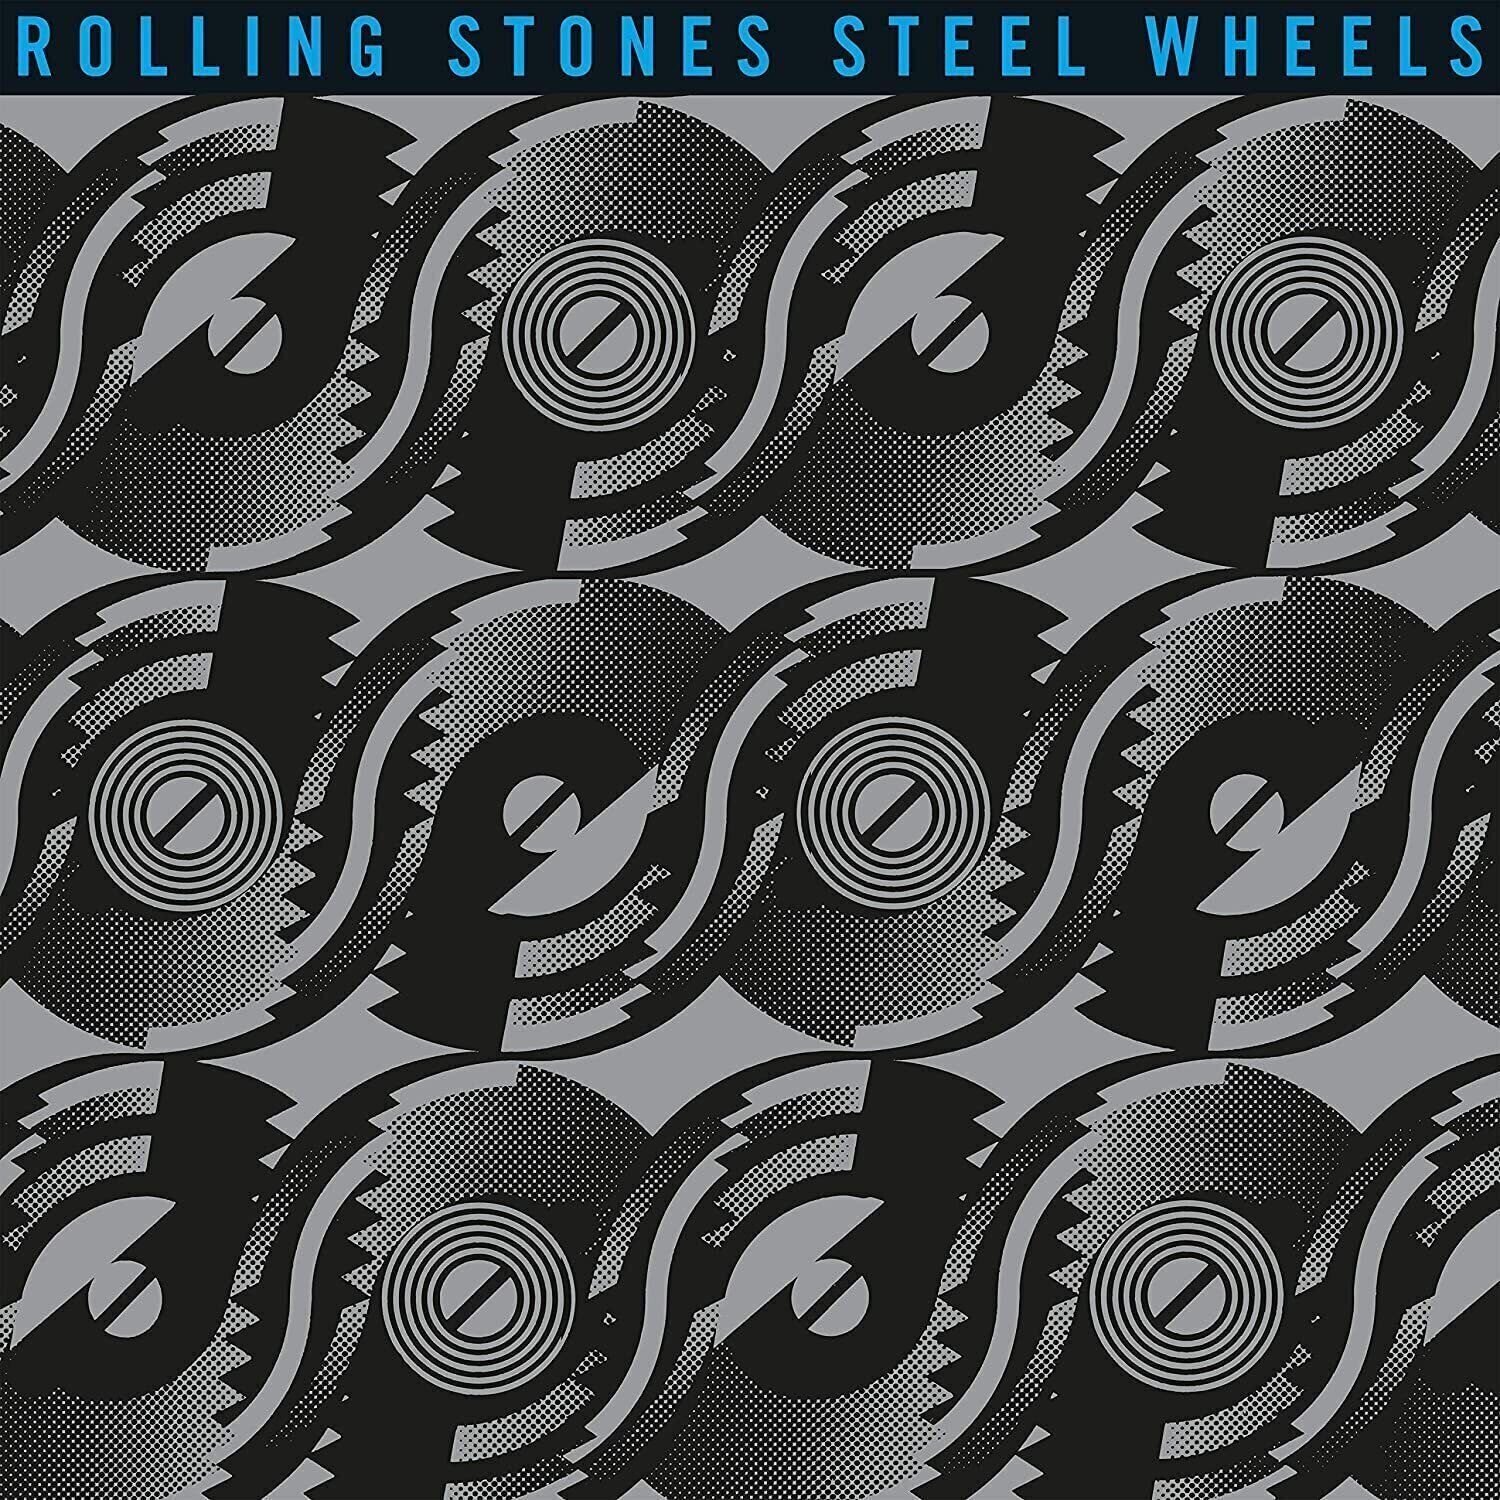 Δίσκος LP The Rolling Stones - Steel Wheels (Half Speed Vinyl) (LP)